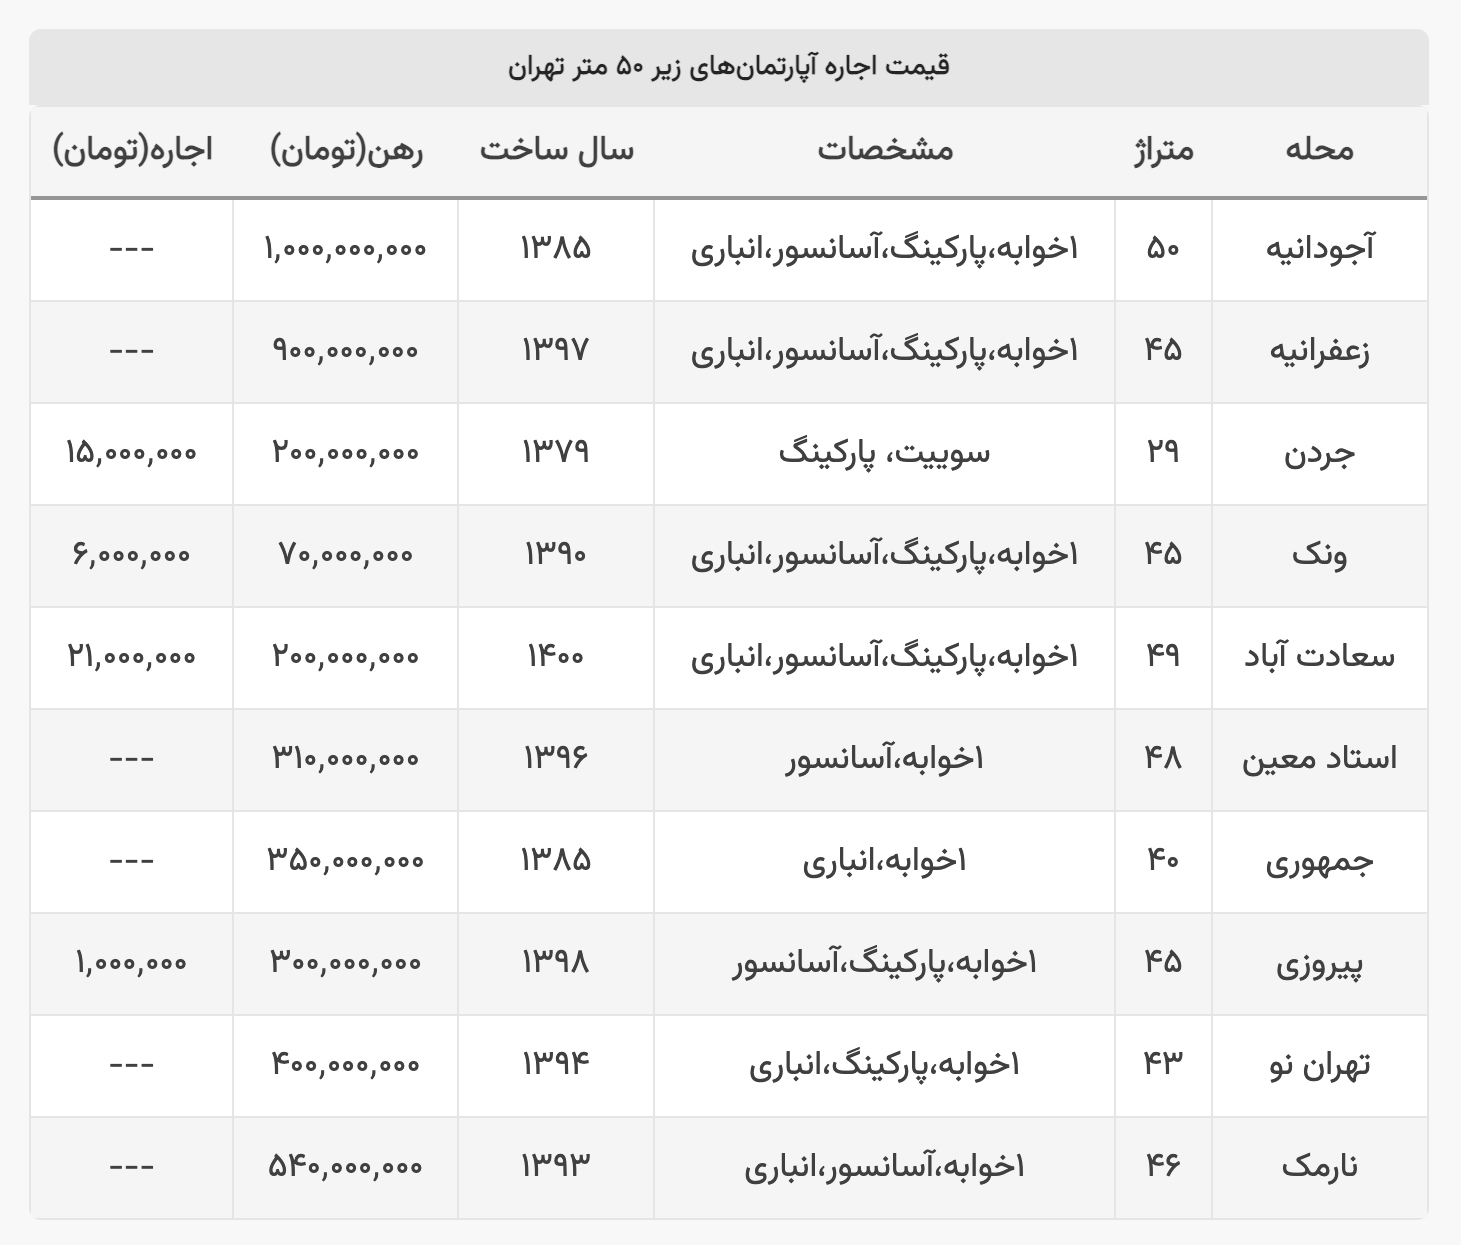 جدول قیمت اجاره یک واحد زیر ۵۰ متر در نقاط مختلف تهران